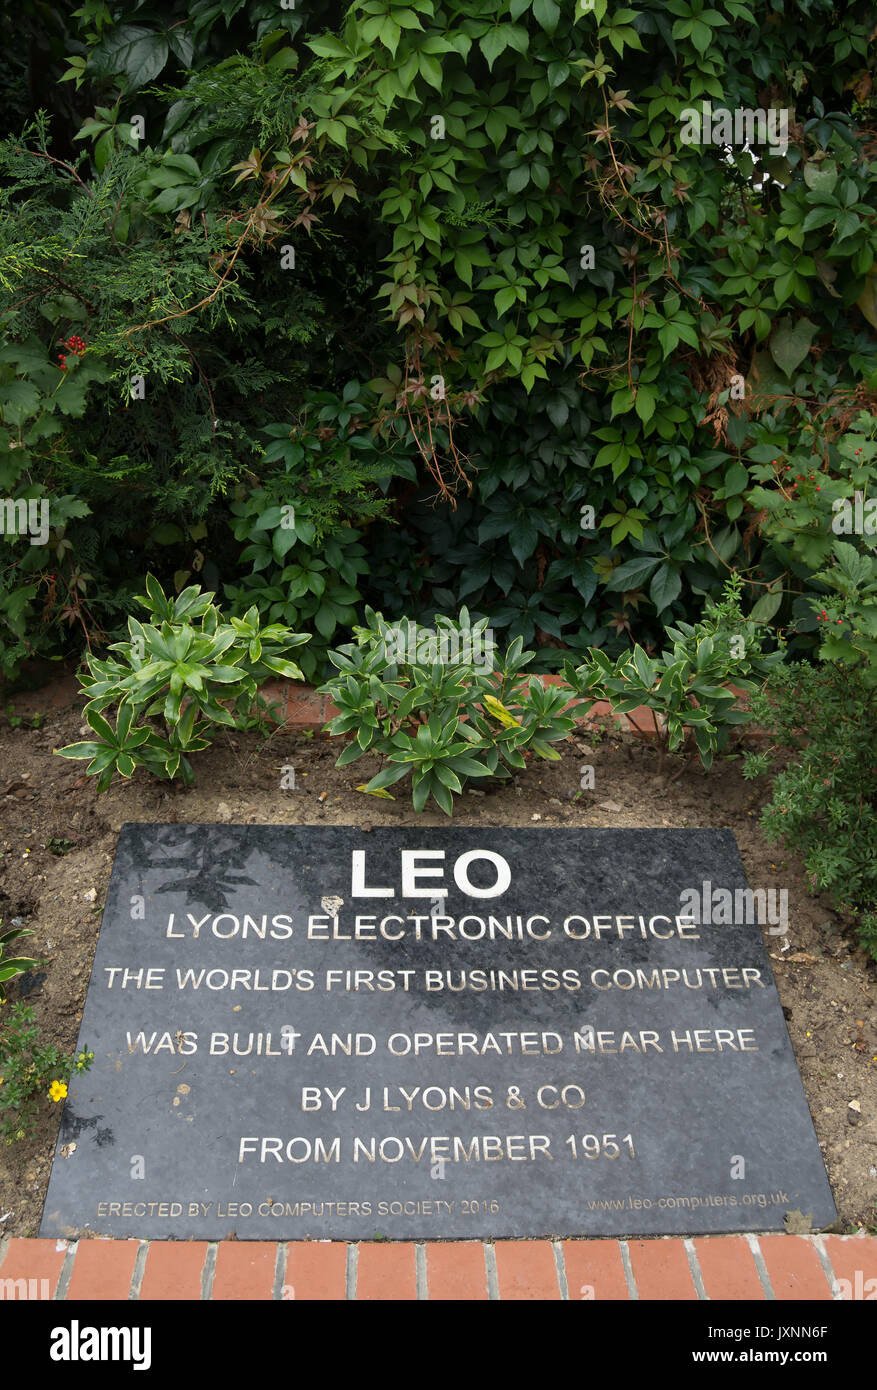 Gedenktafel zur Erinnerung an die Website von Leo, oder lyons elektronische Büro, das erste Business Computer und durch die j Lyons Company, London, England Stockfoto